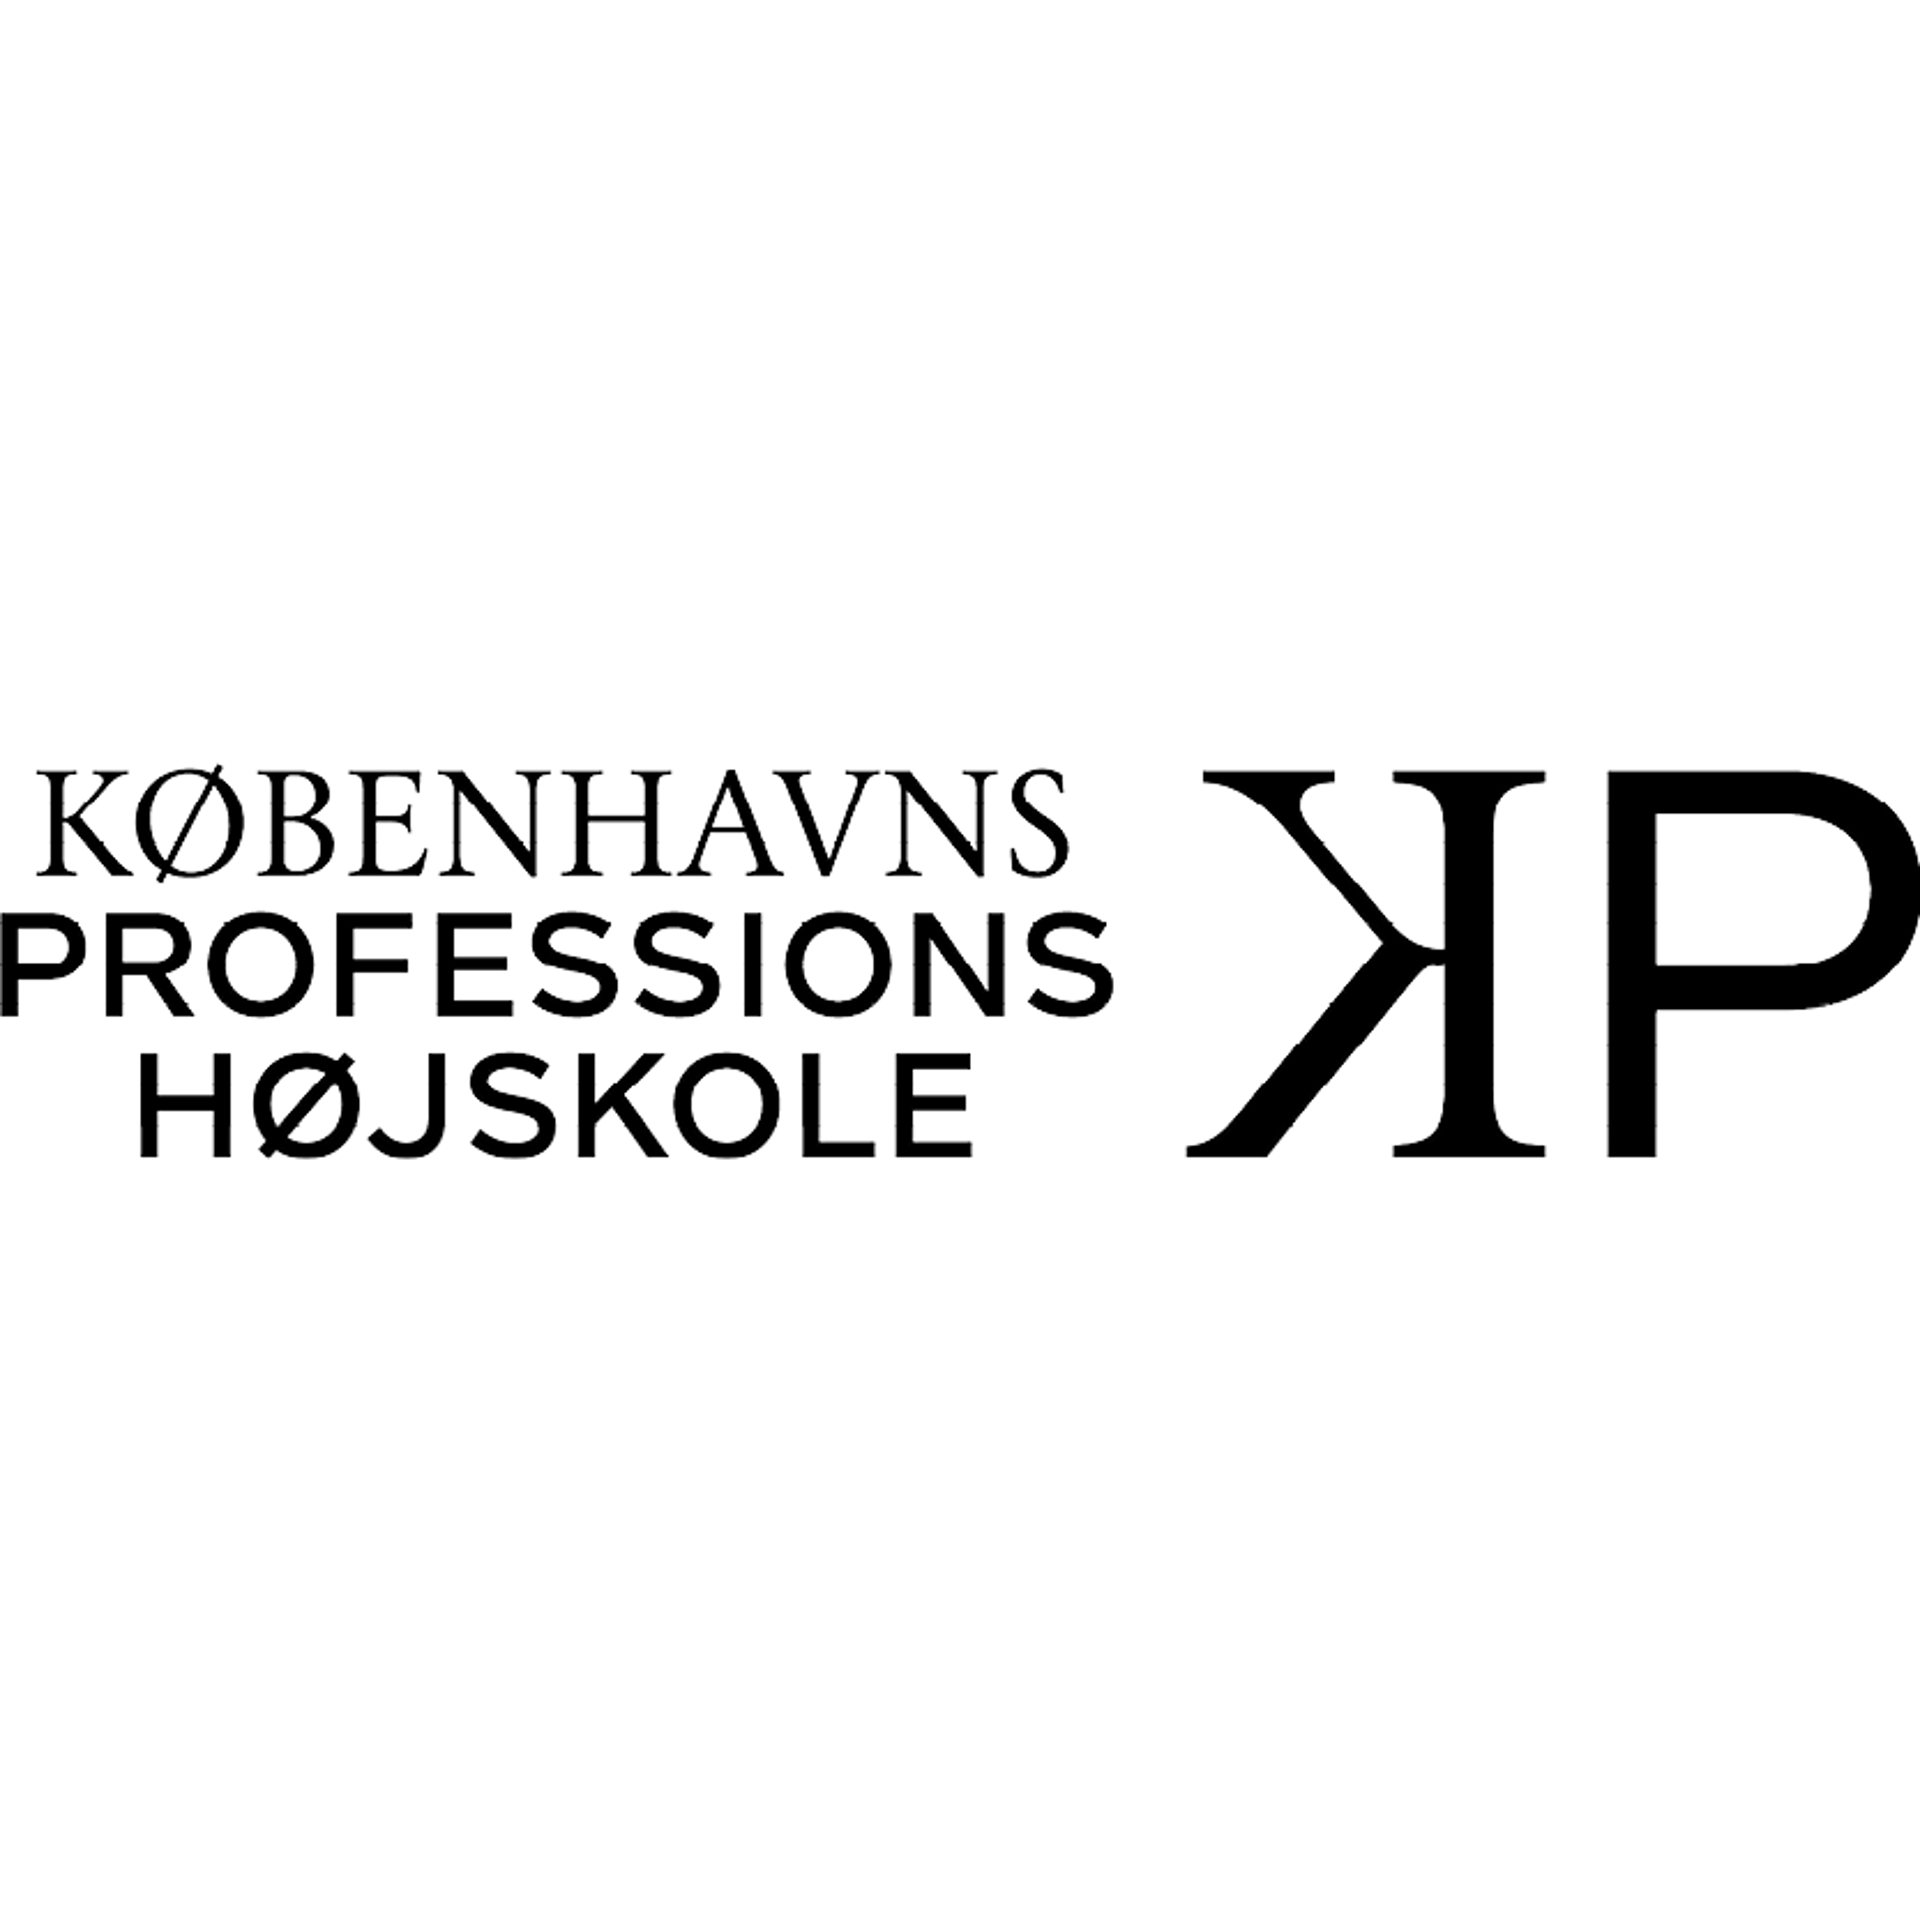 KP-Københavns Professions Højskole